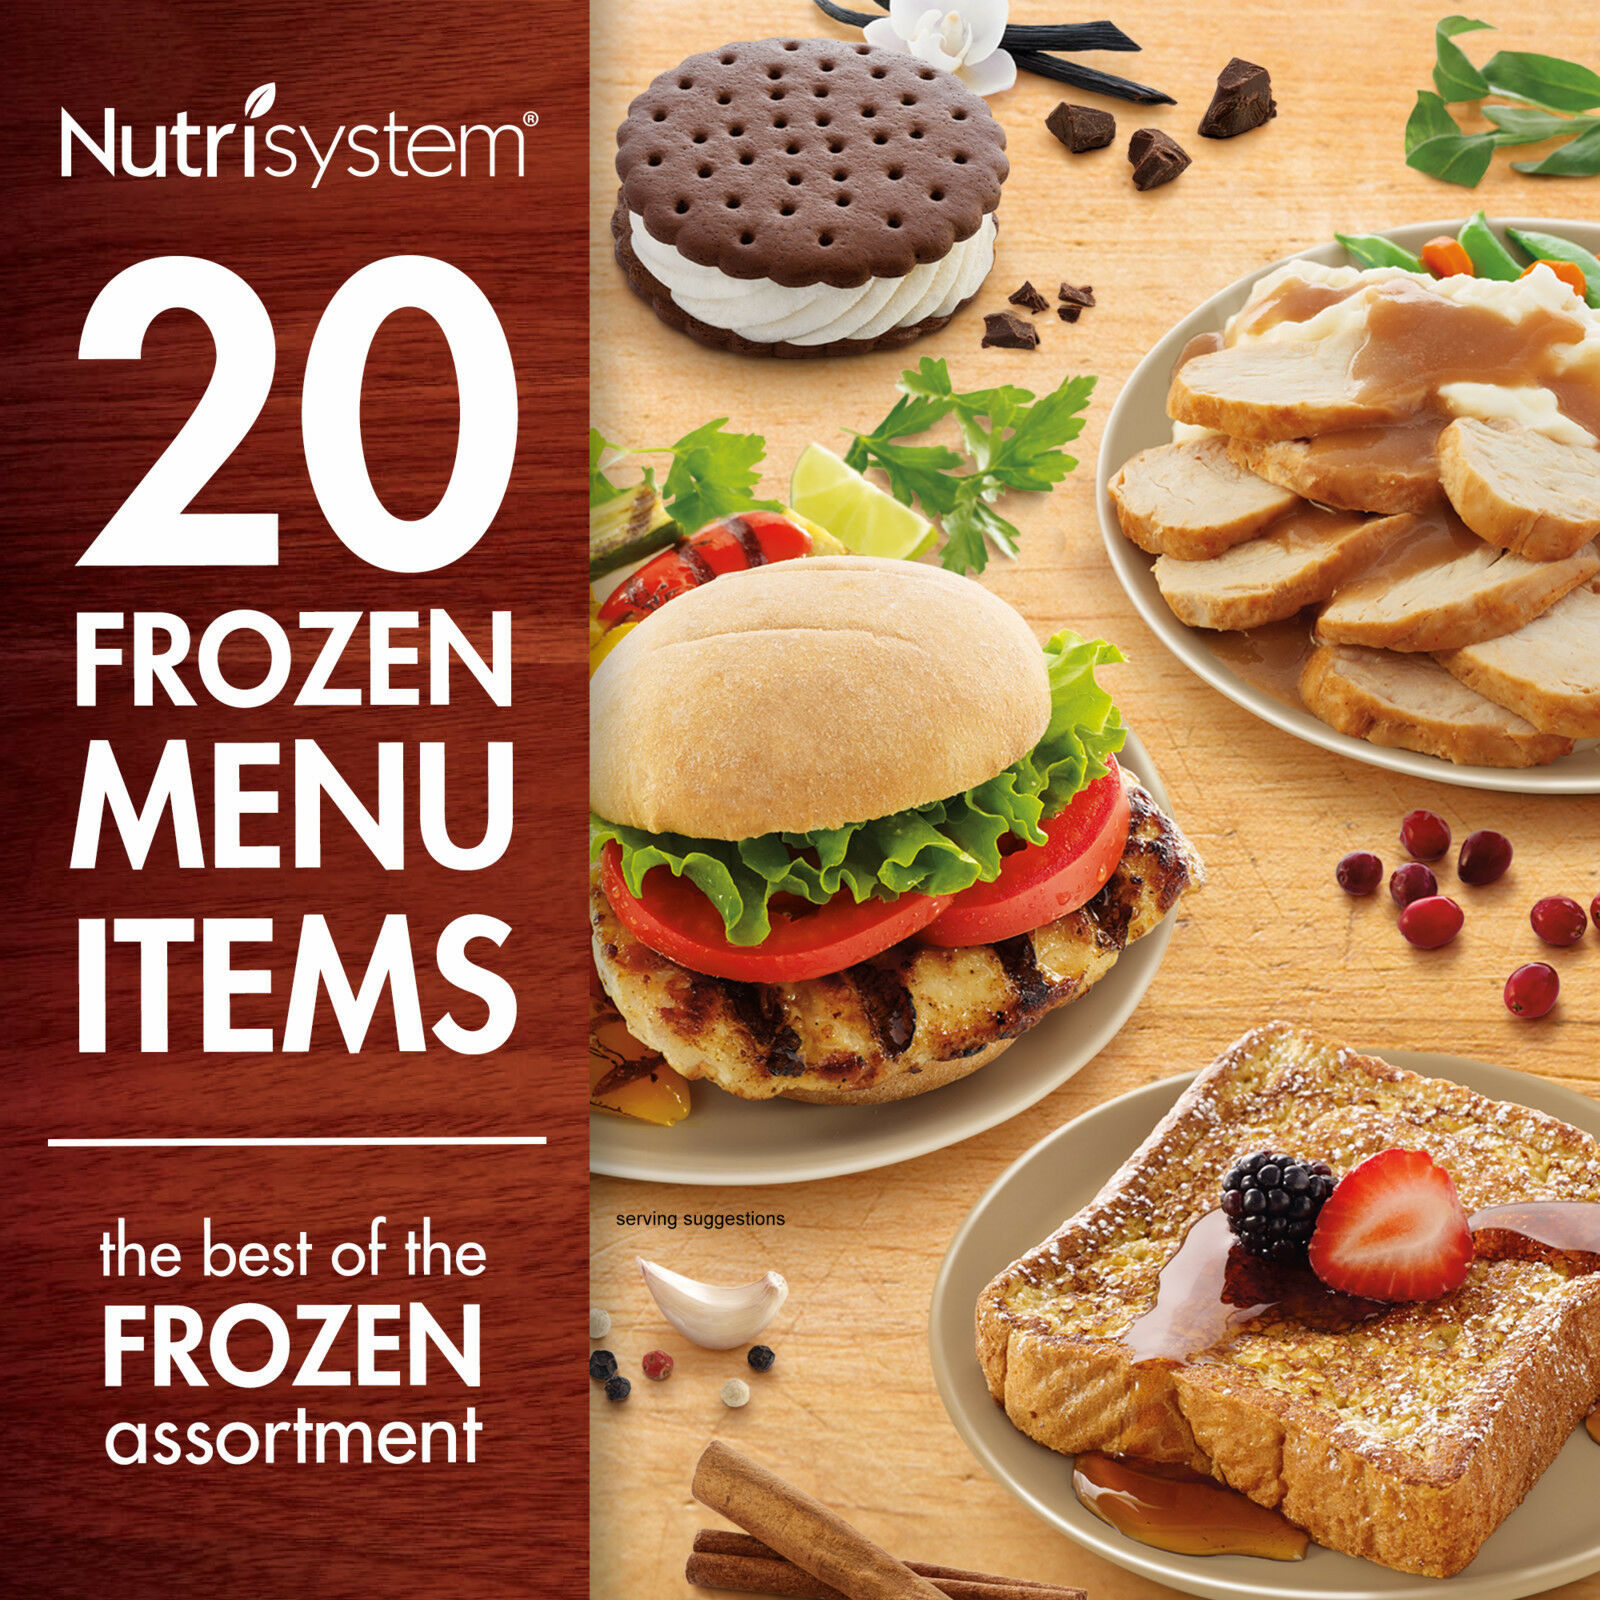 Nutrisystem 5 Day Diet Kit Weight Loss Frozen Food Meals Snacks Breakfast Lunch